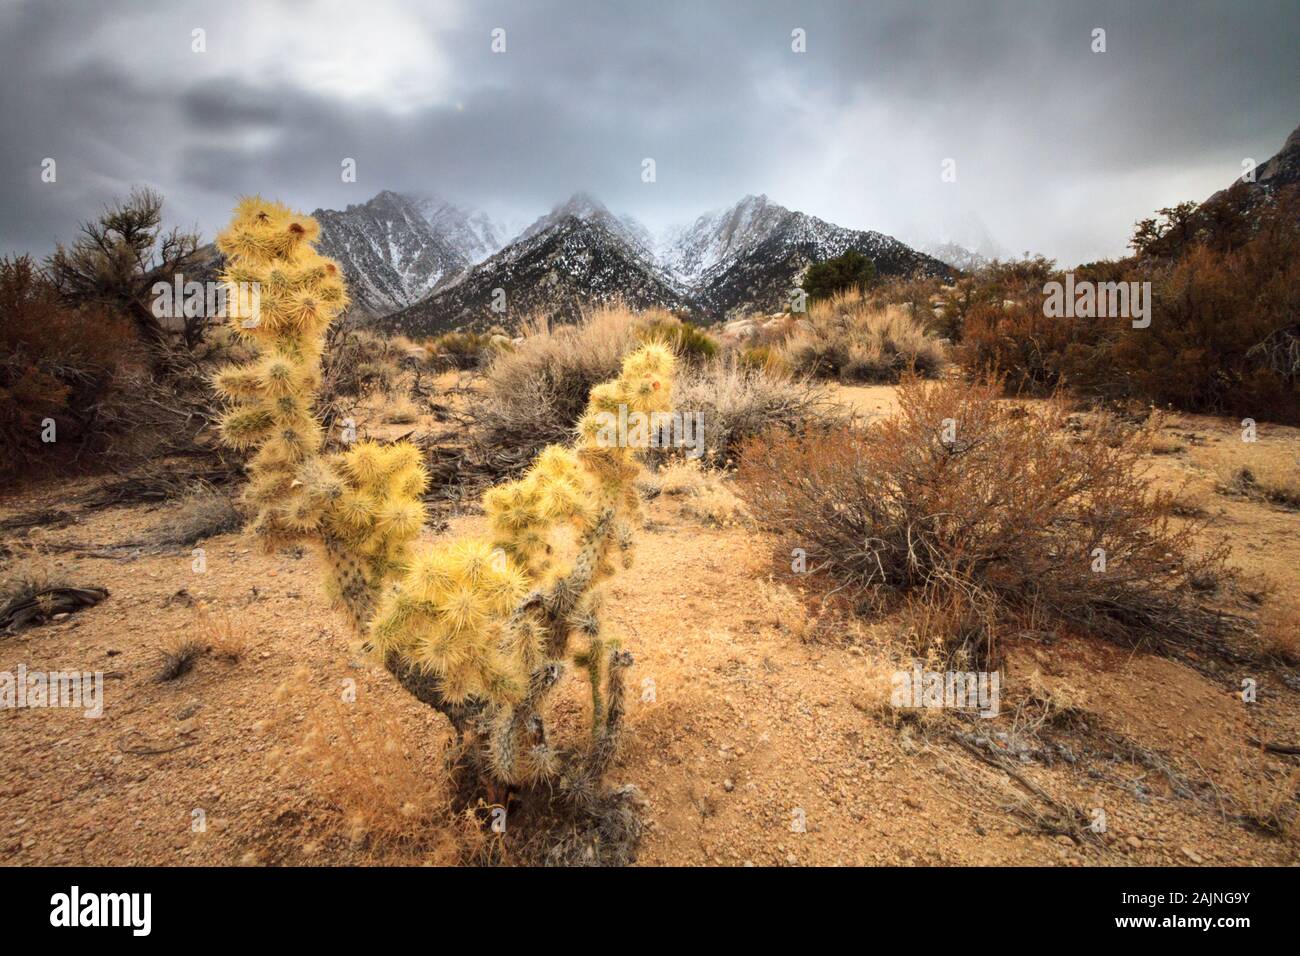 La Eastern Sierras leggermente ricoperta di neve con un primo piano di cactus e arbusti del deserto. Foto Stock